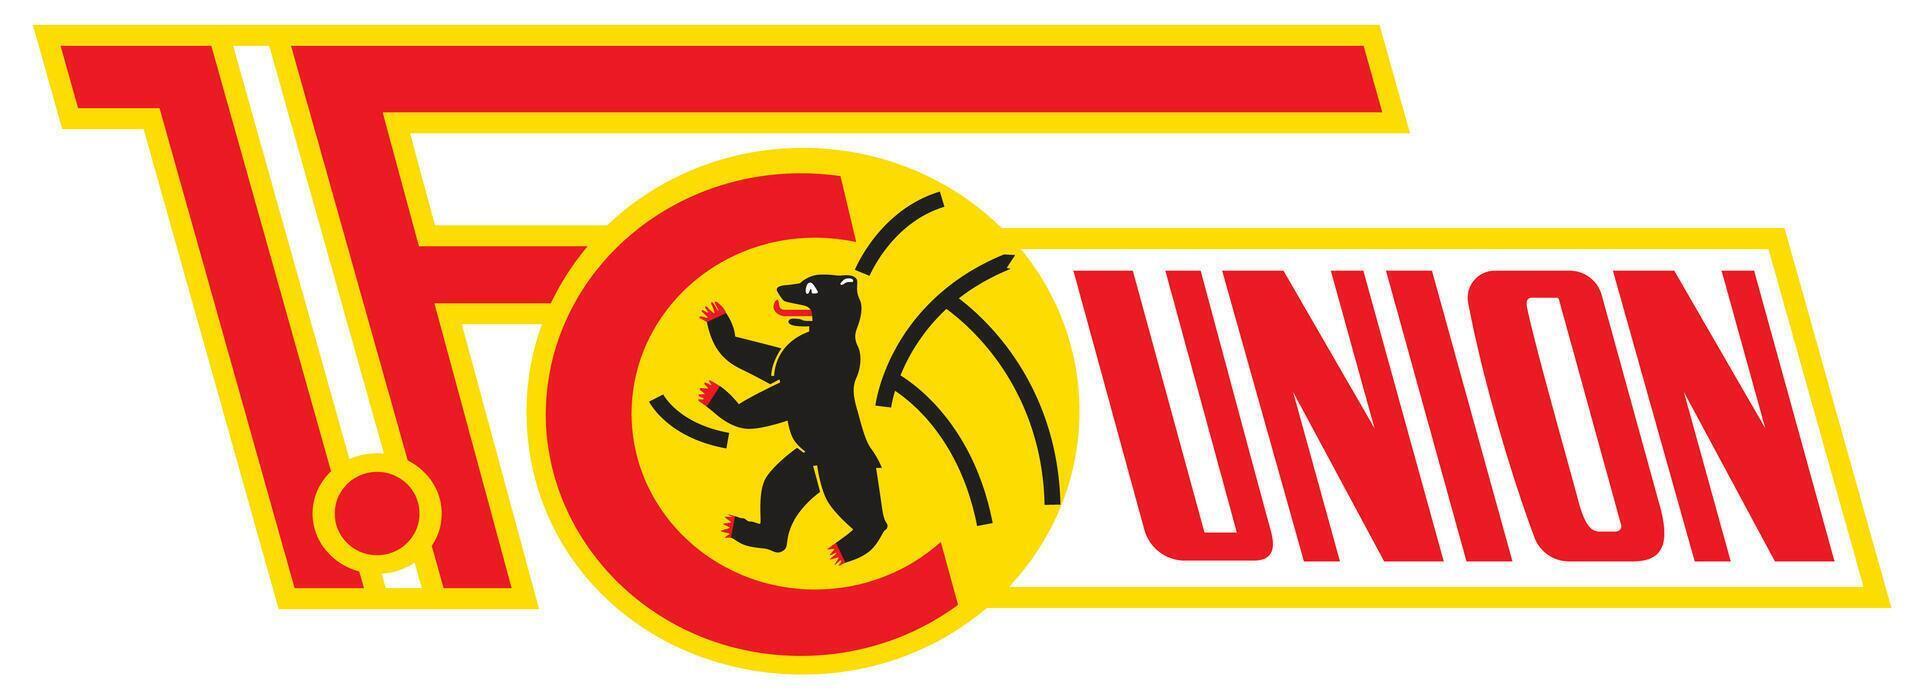 logo van de unie berlijn bundesliga Amerikaans voetbal team vector